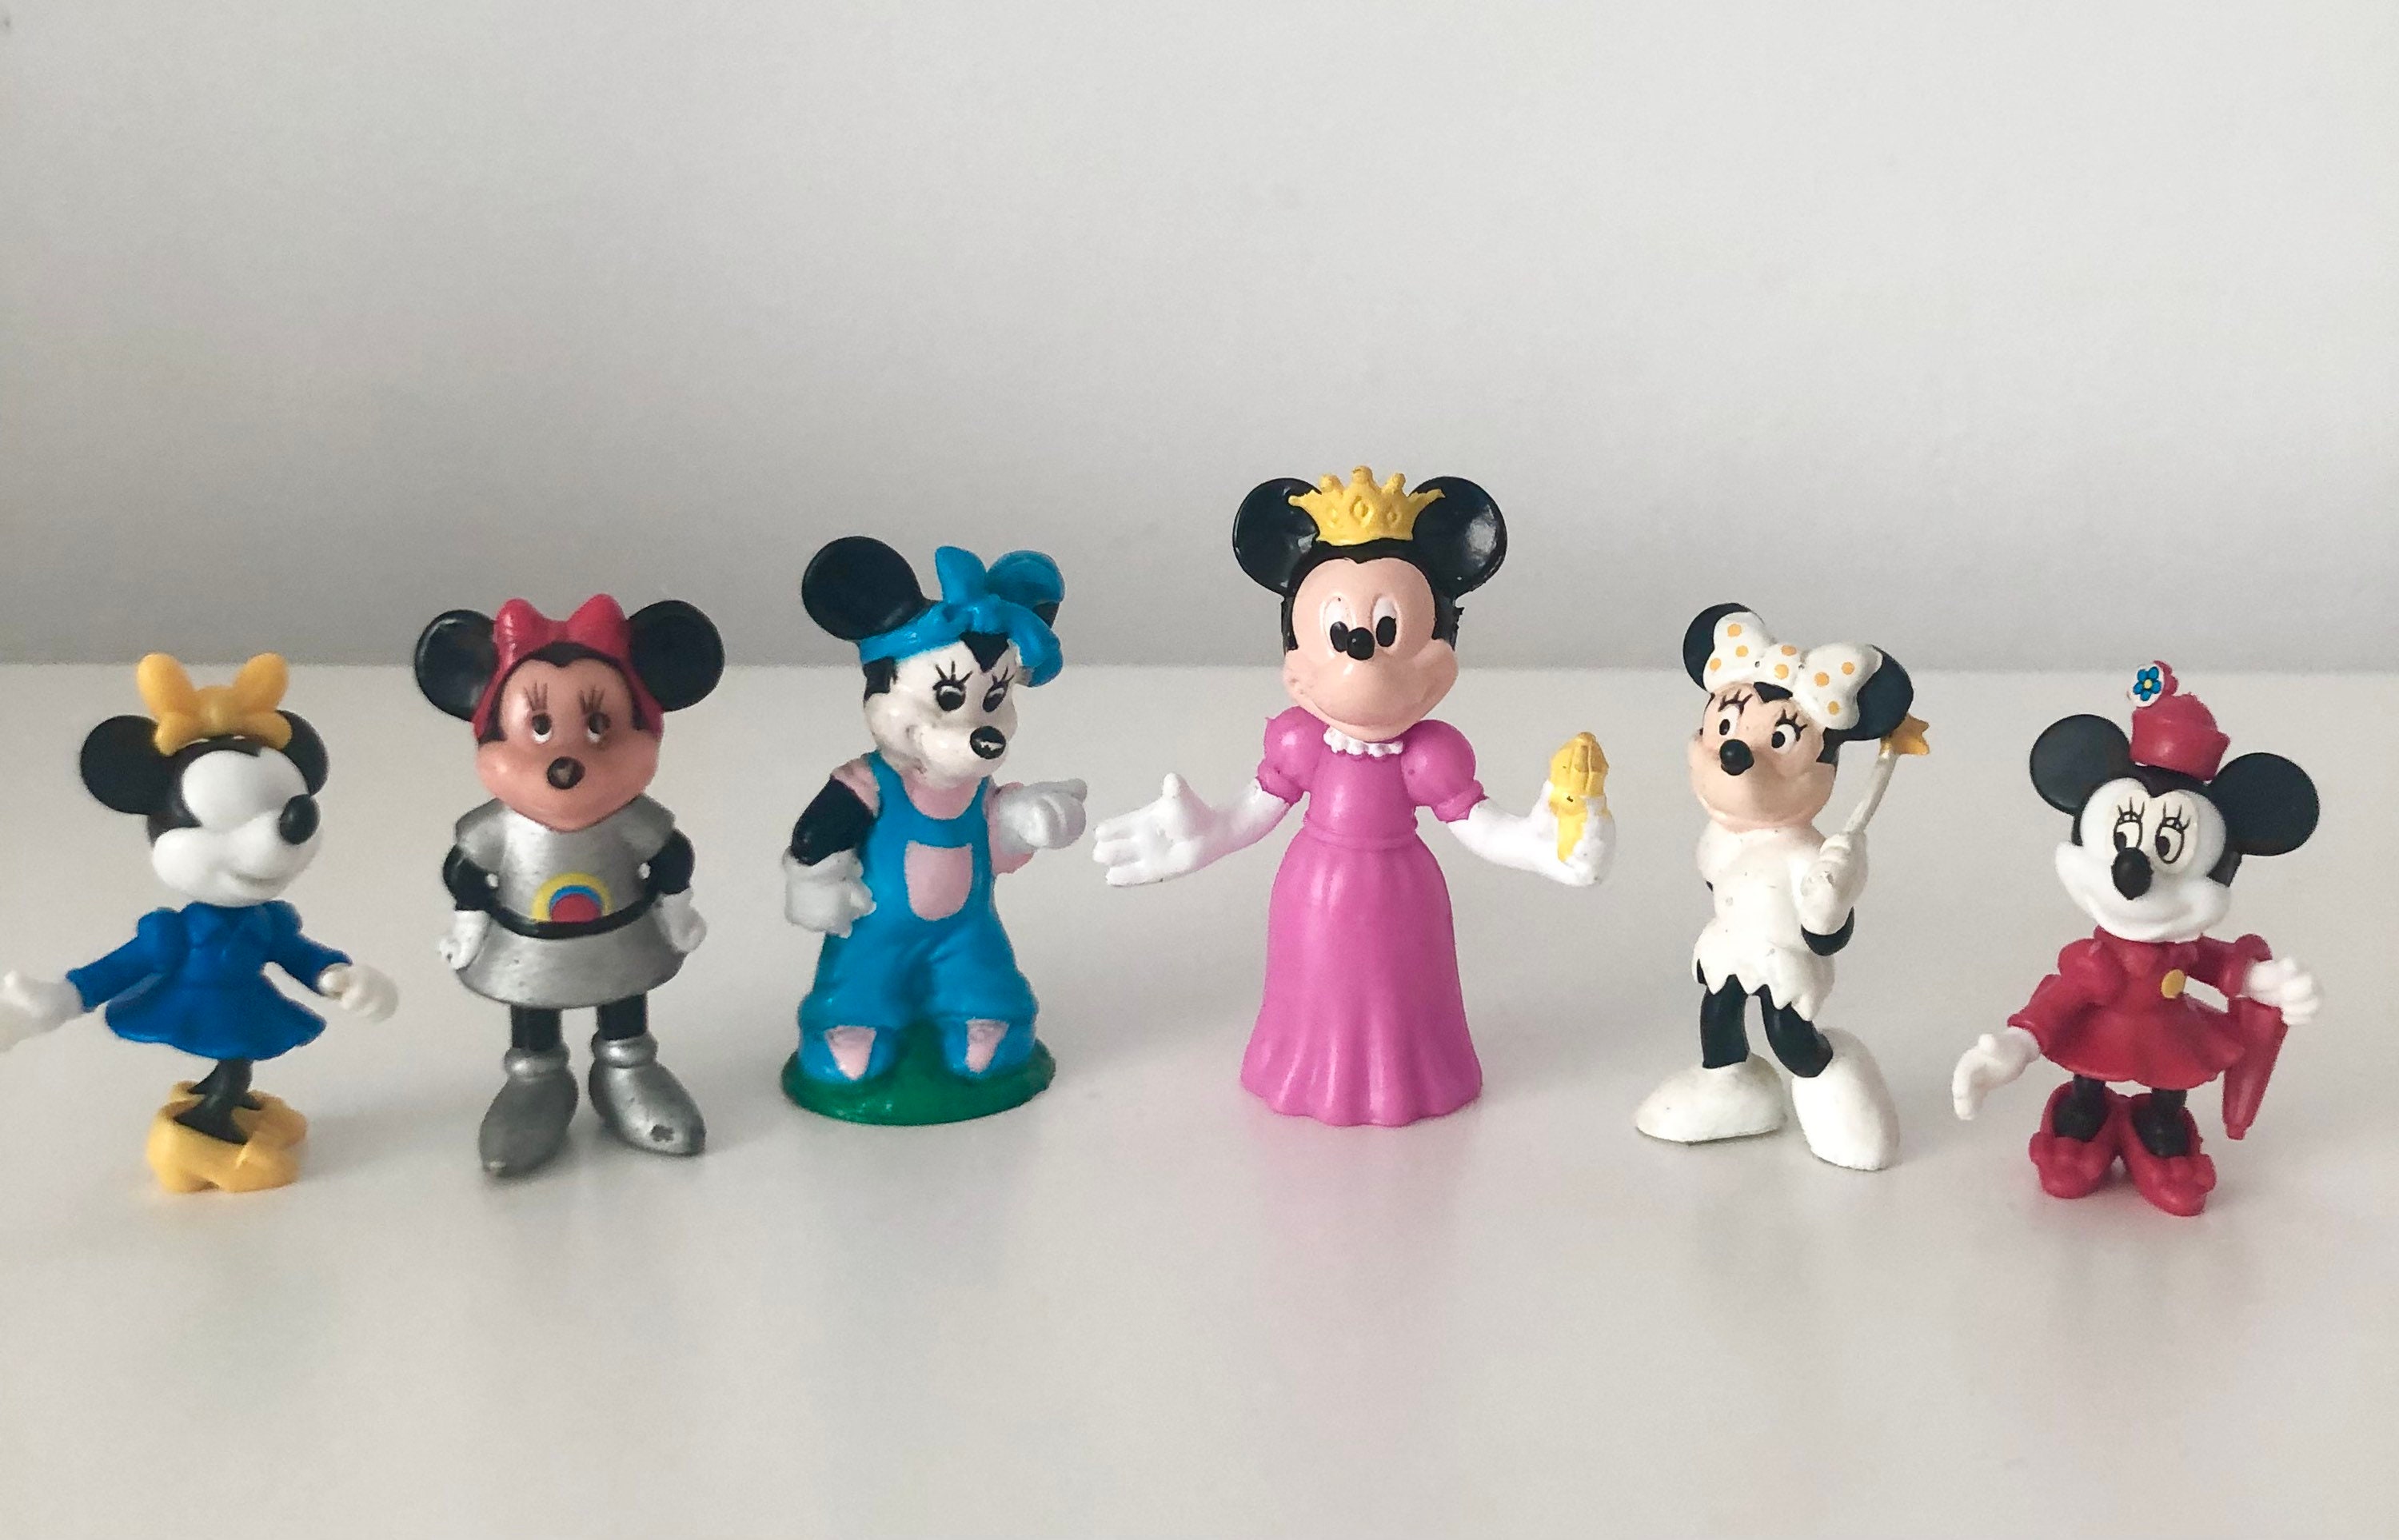 Jouets Minnie - Idées et achat Jeux Jouets Disney